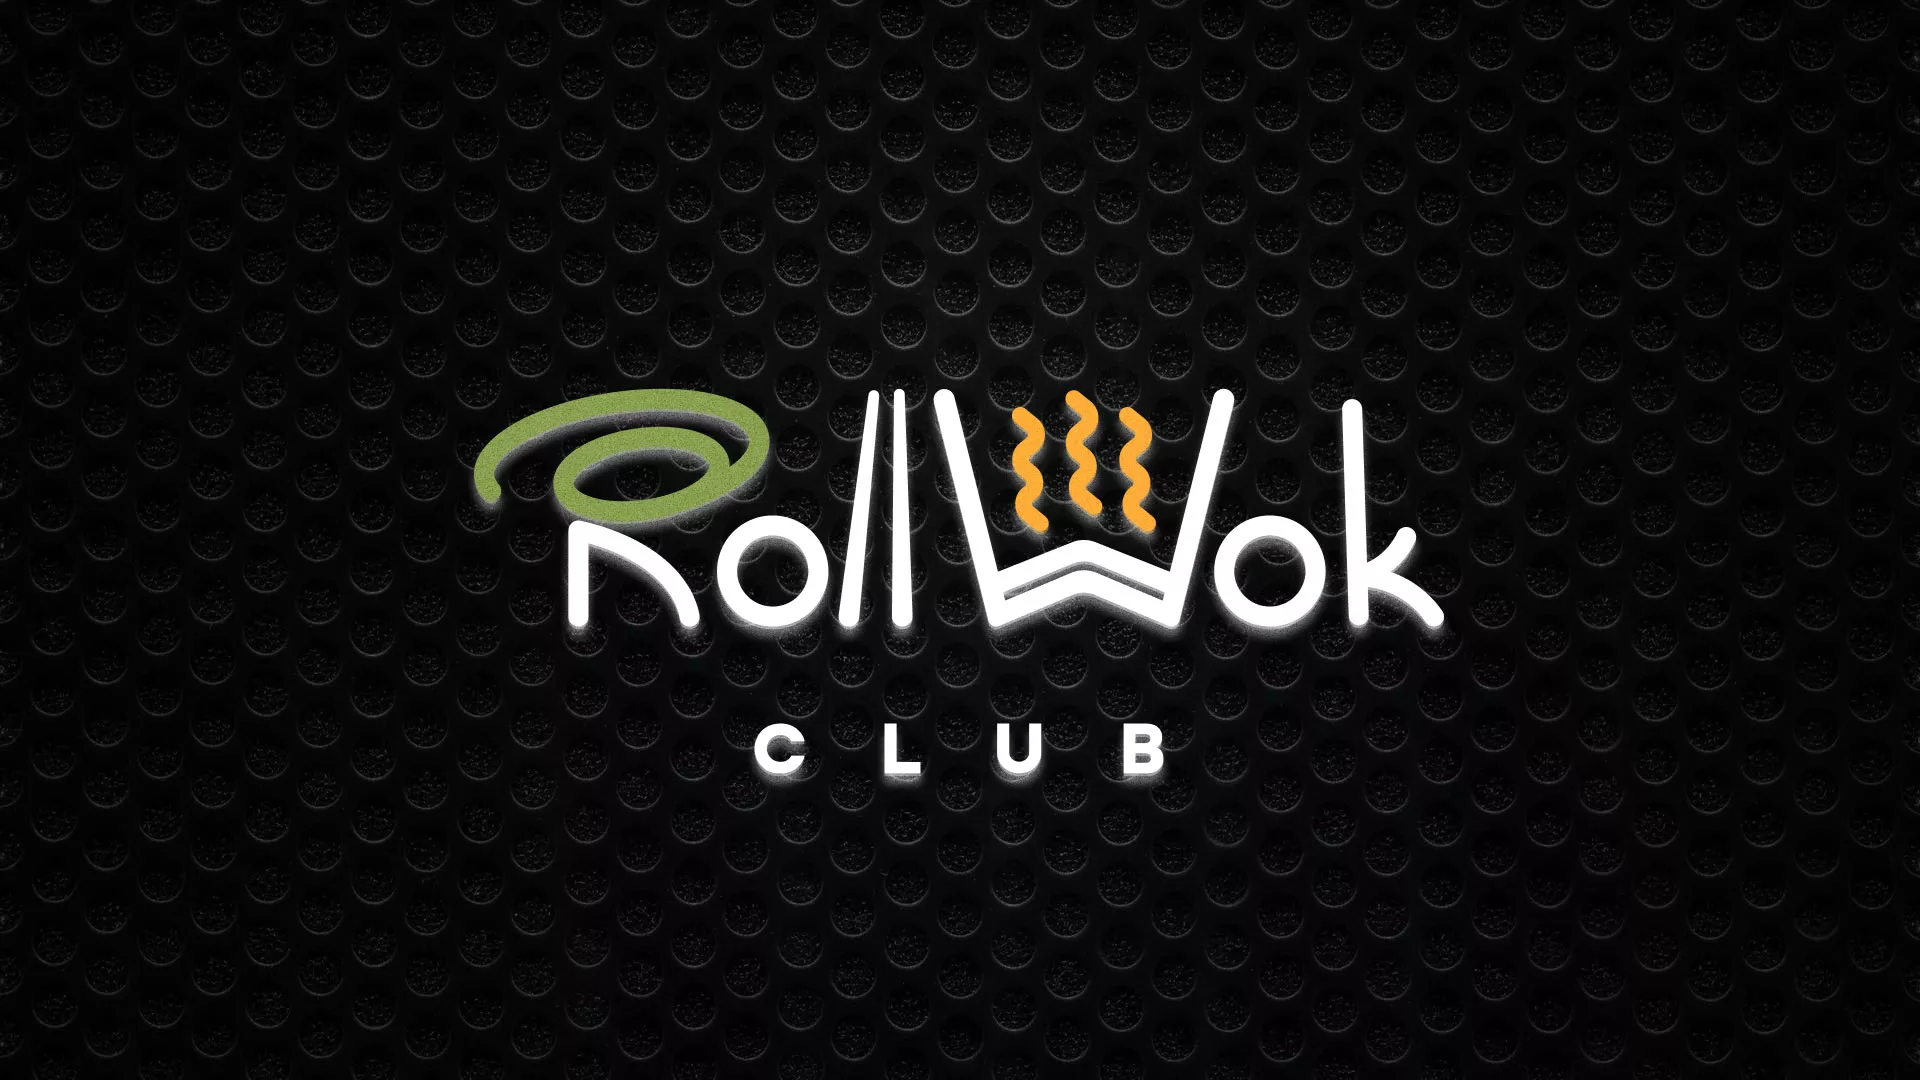 Брендирование торговых точек суши-бара «Roll Wok Club» в Ростове-на-Дону